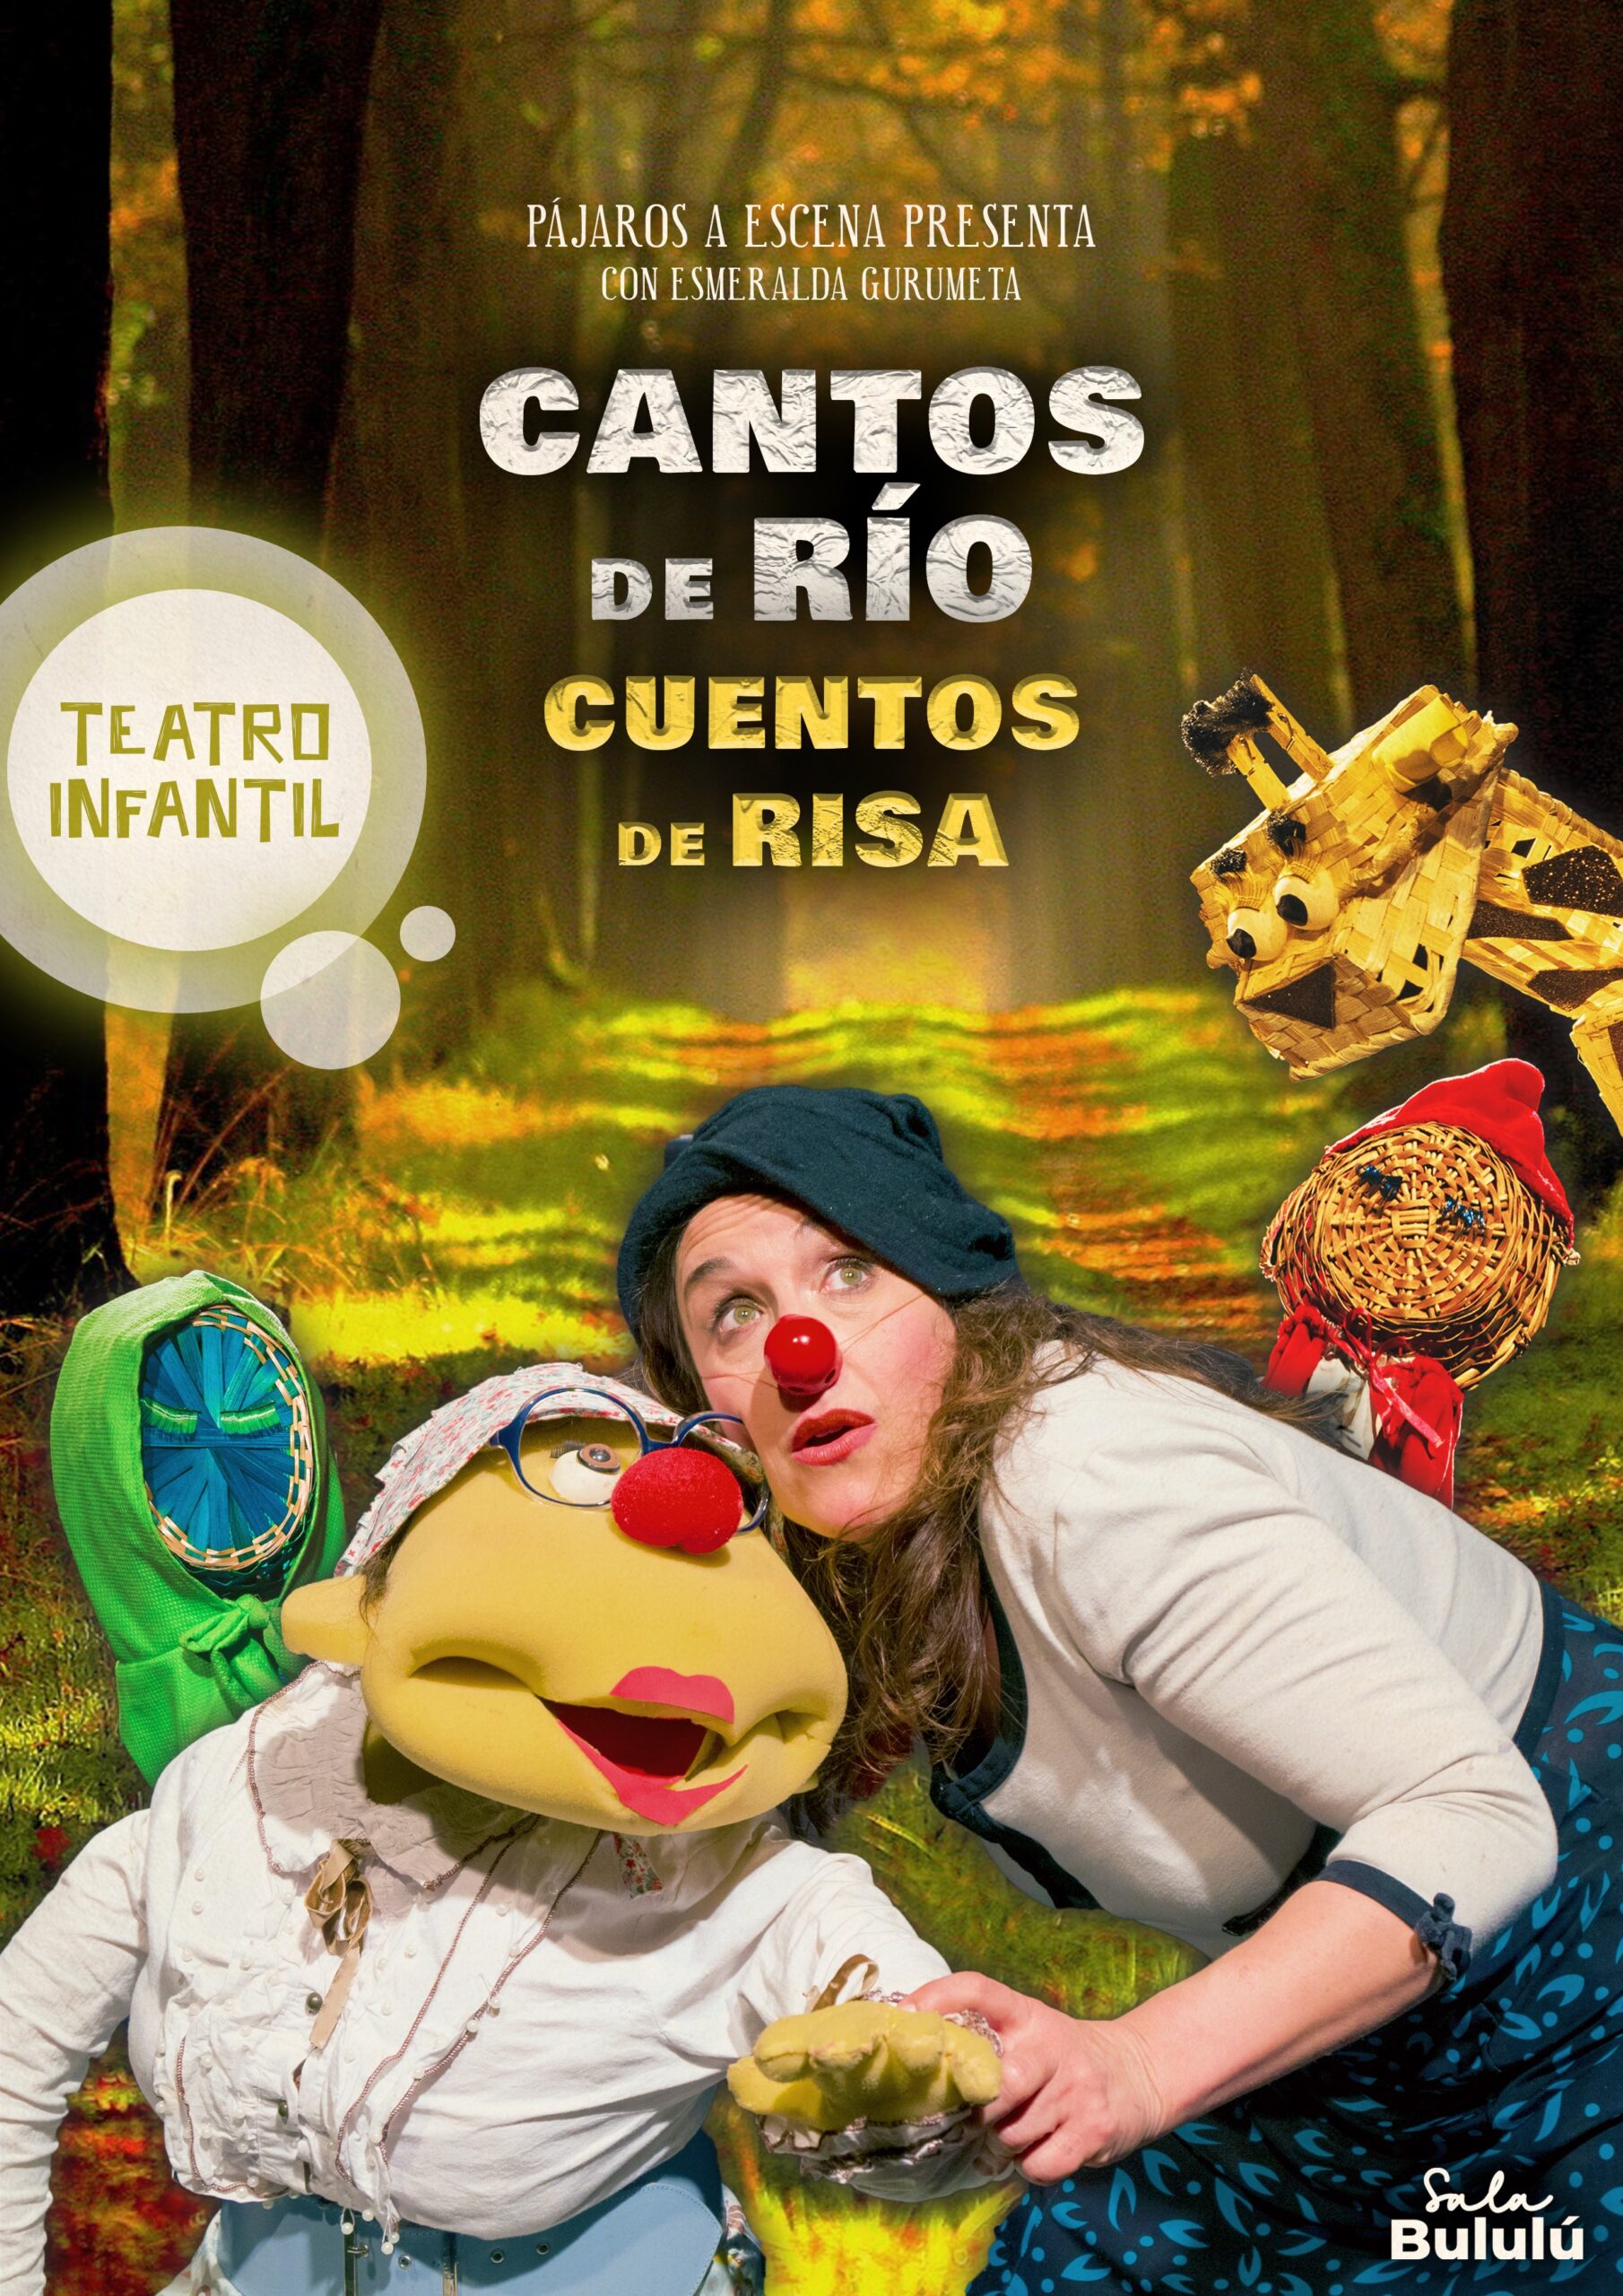 Teatro para niños en Madrid centro